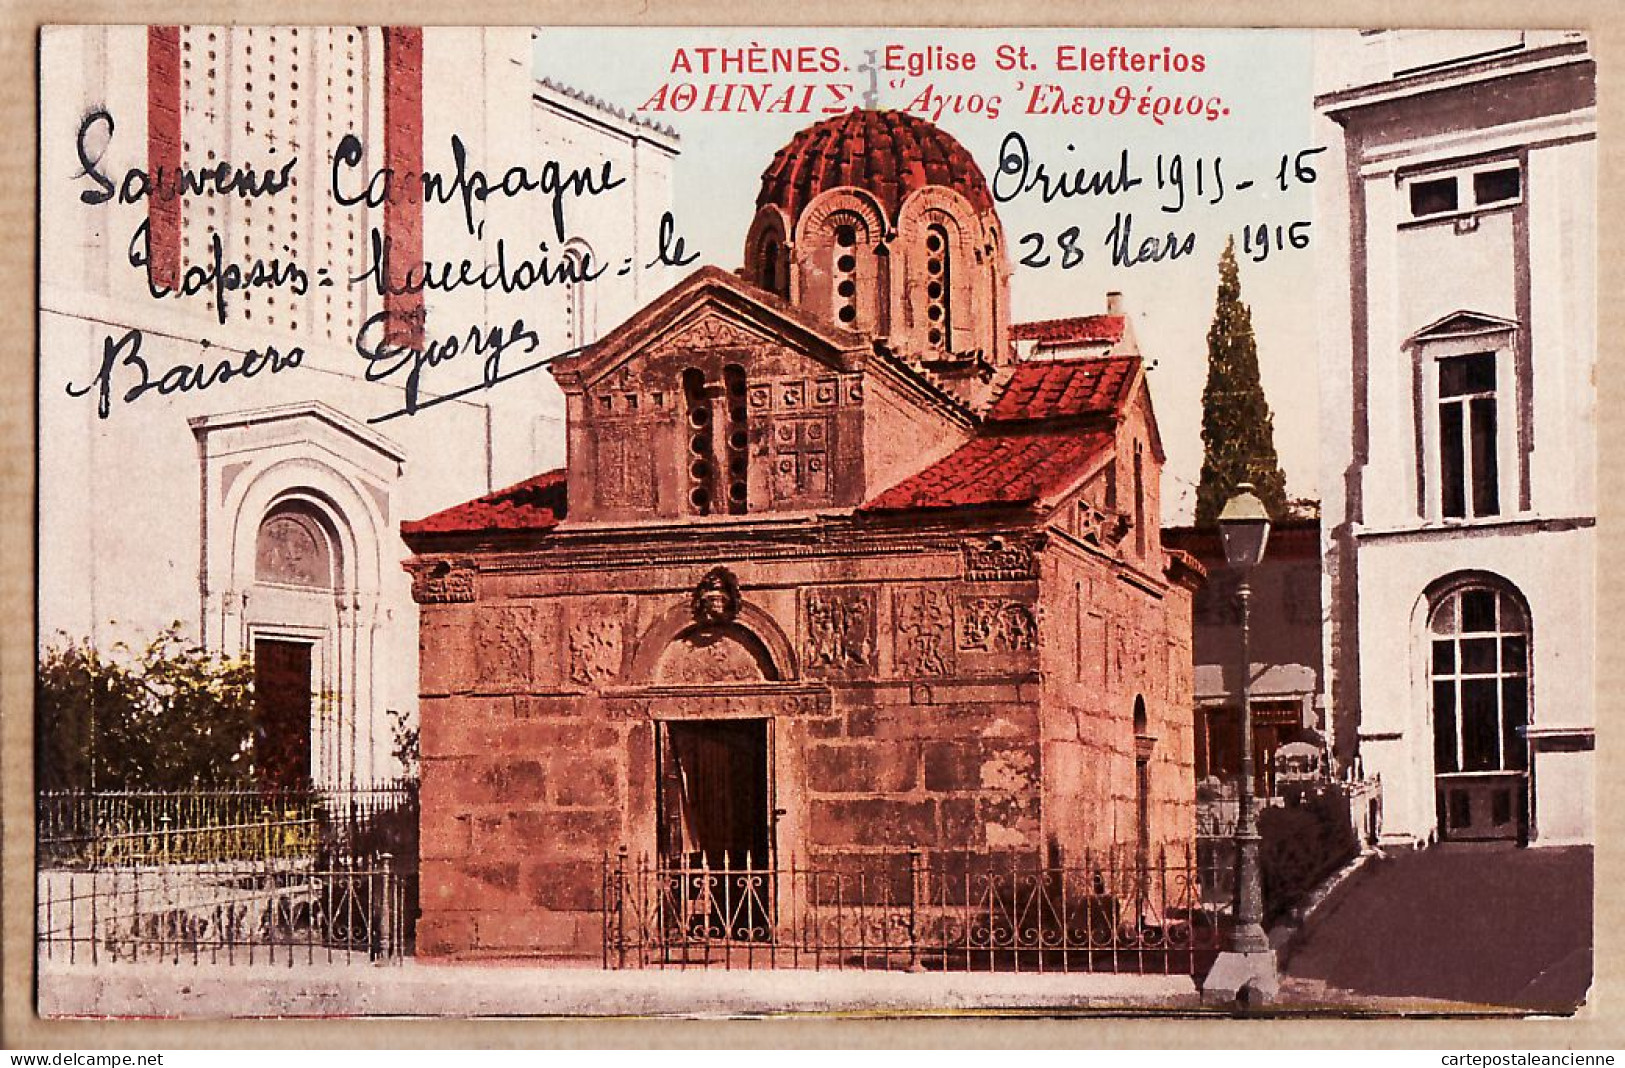 06404 / Lisez Souvenir De CAMPAGNE ORIENT 1915-16 De TOPSIN Macédoine 28 Mars 1916  ATHENES Eglise ELEFTERIOS CpaWW1 - Greece